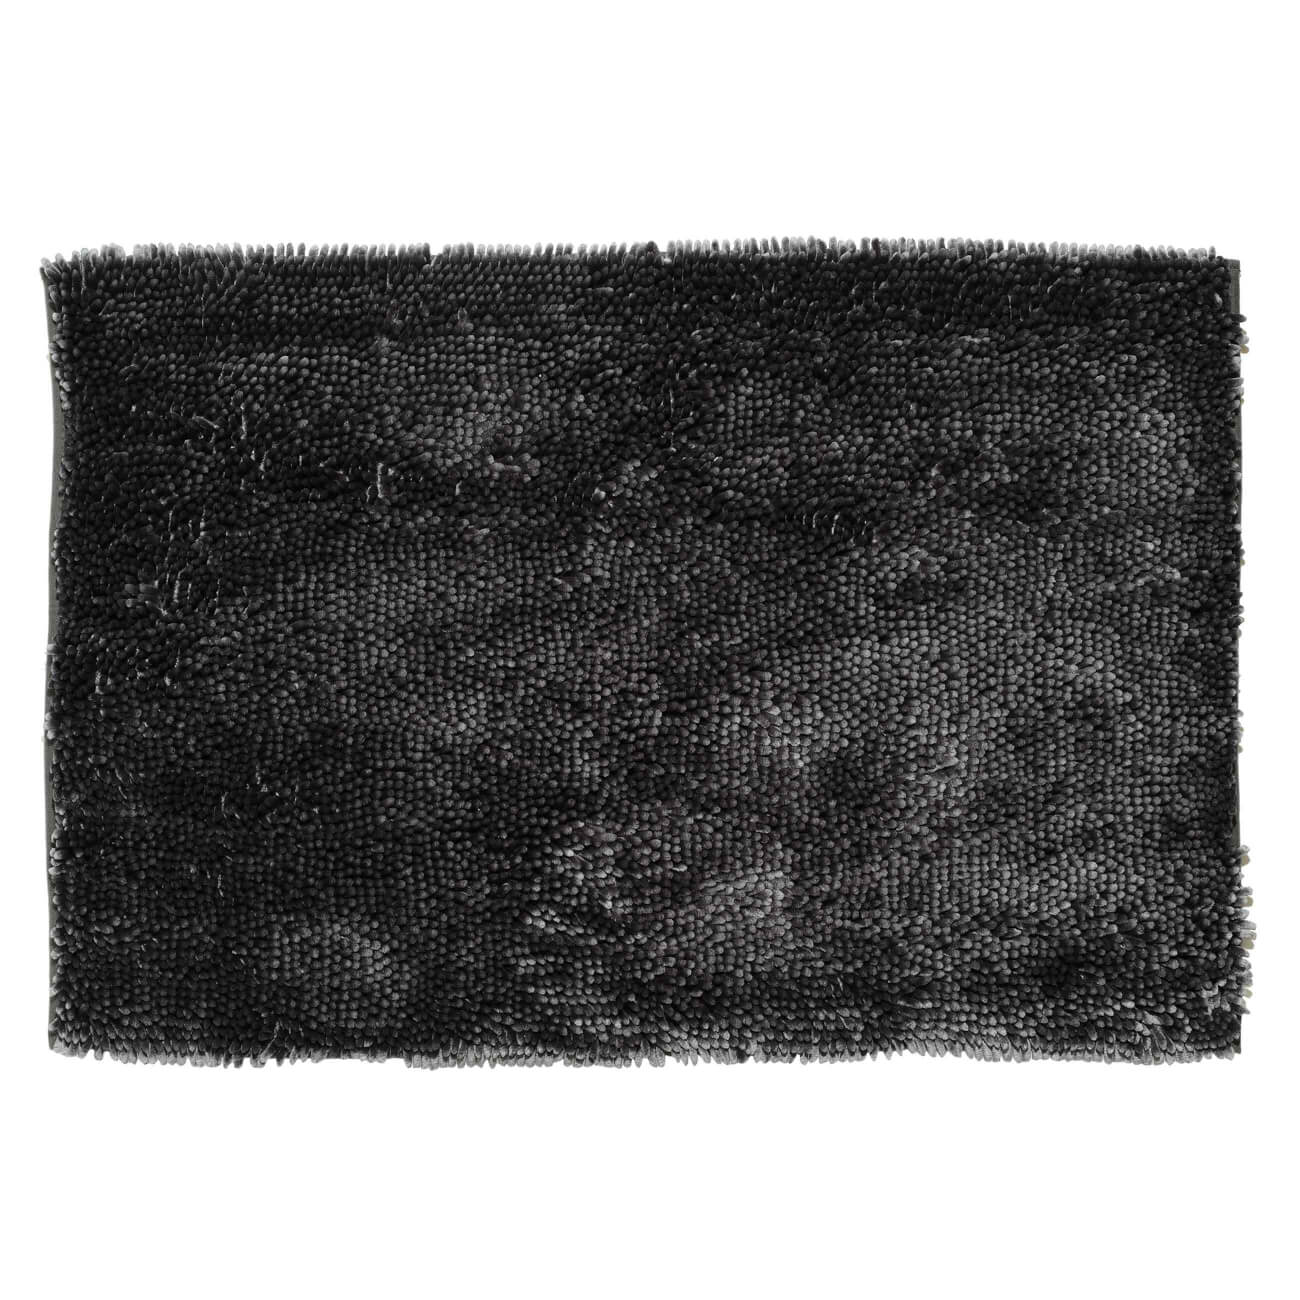 Коврик, 65х100 см, противоскользящий, полиэстер, темно-серый, Fluffy eva коврик для животных темно серый ромб 60х130 см